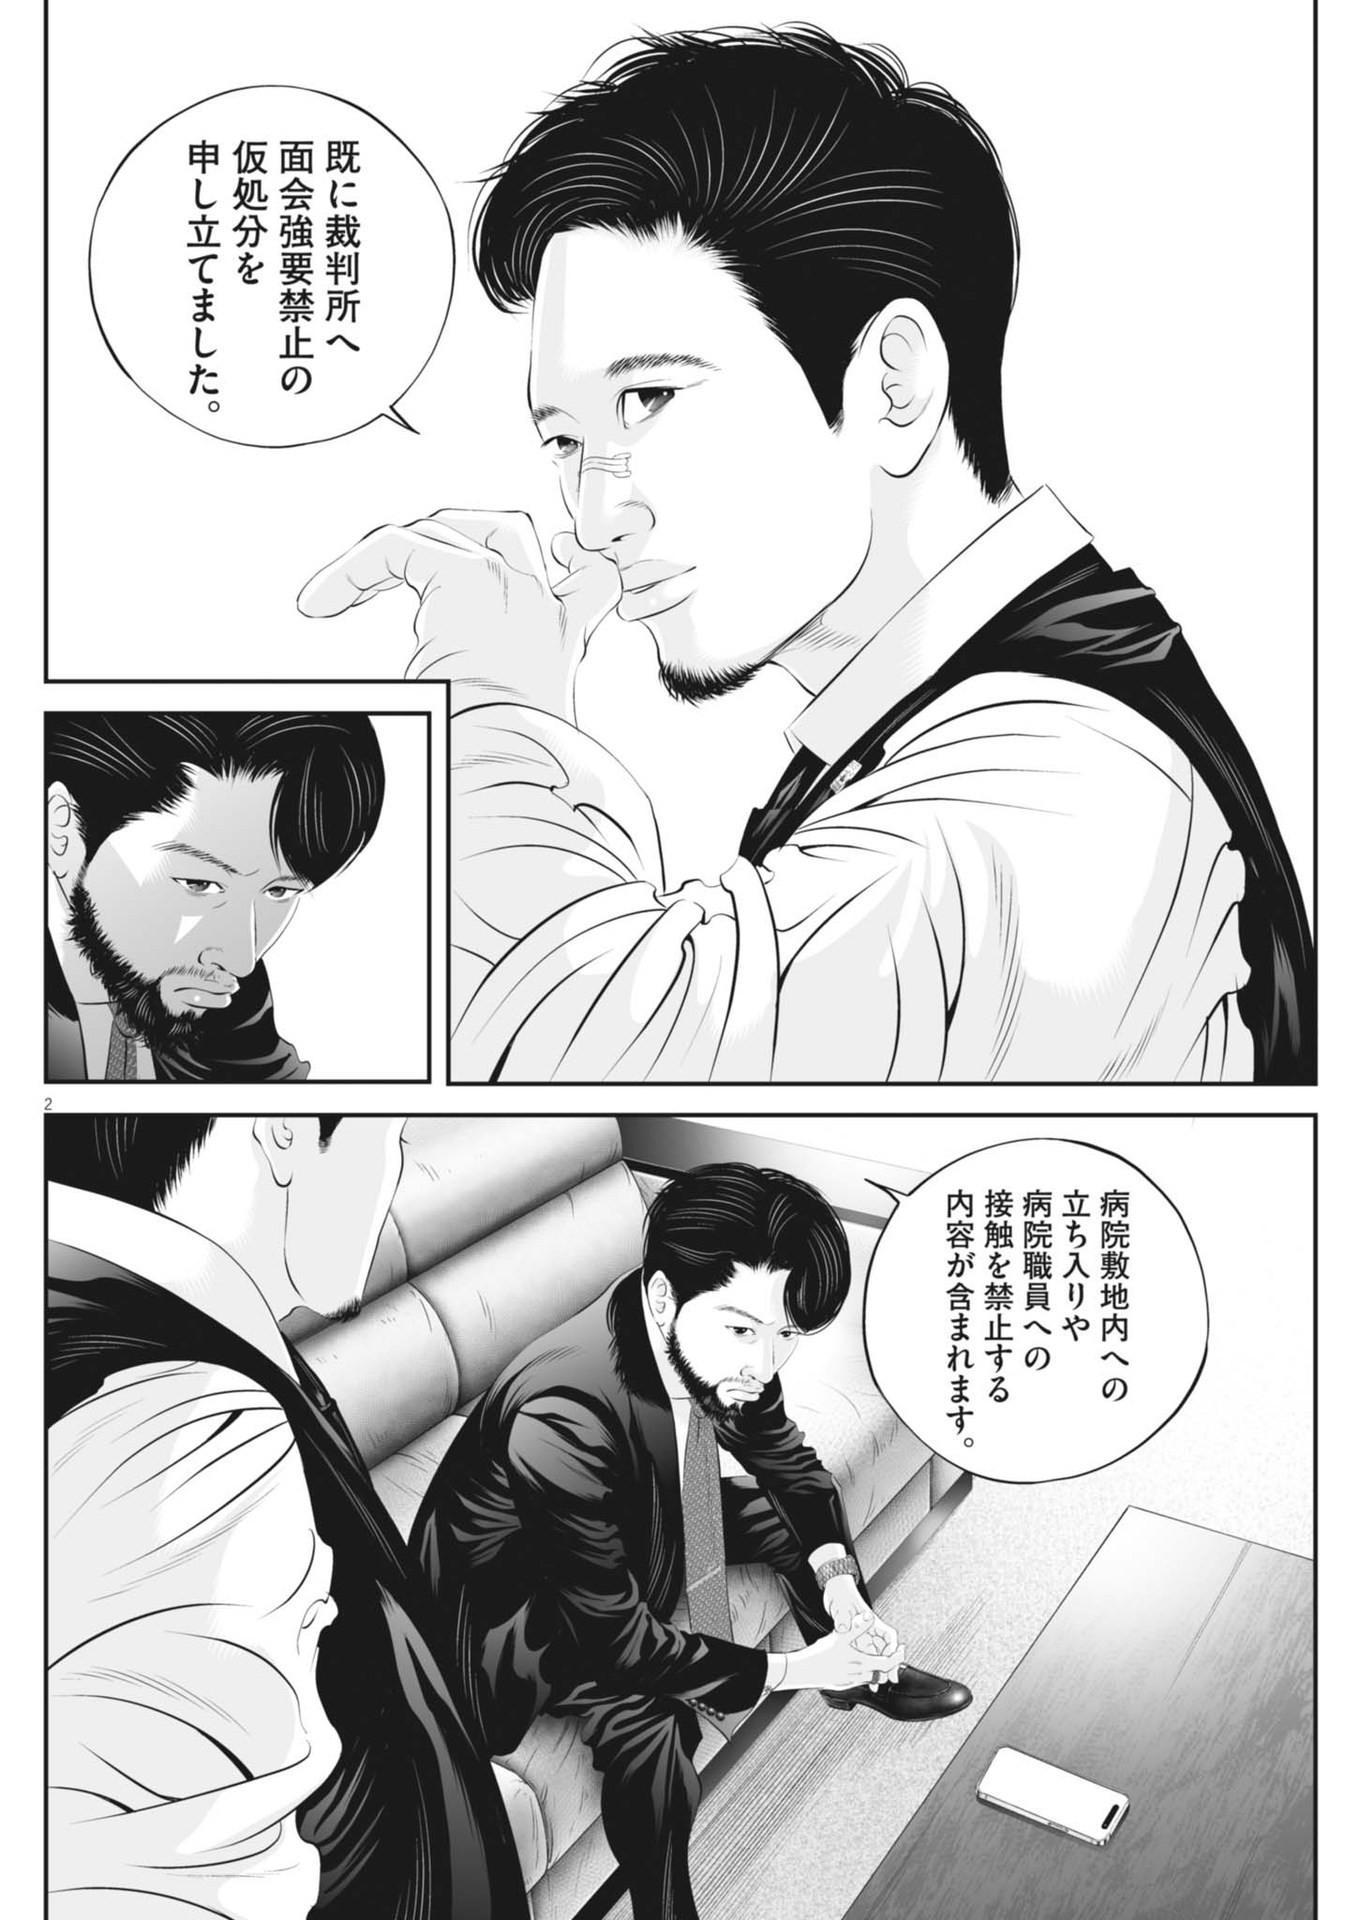 Kujou no Taizai - Chapter 102 - Page 2